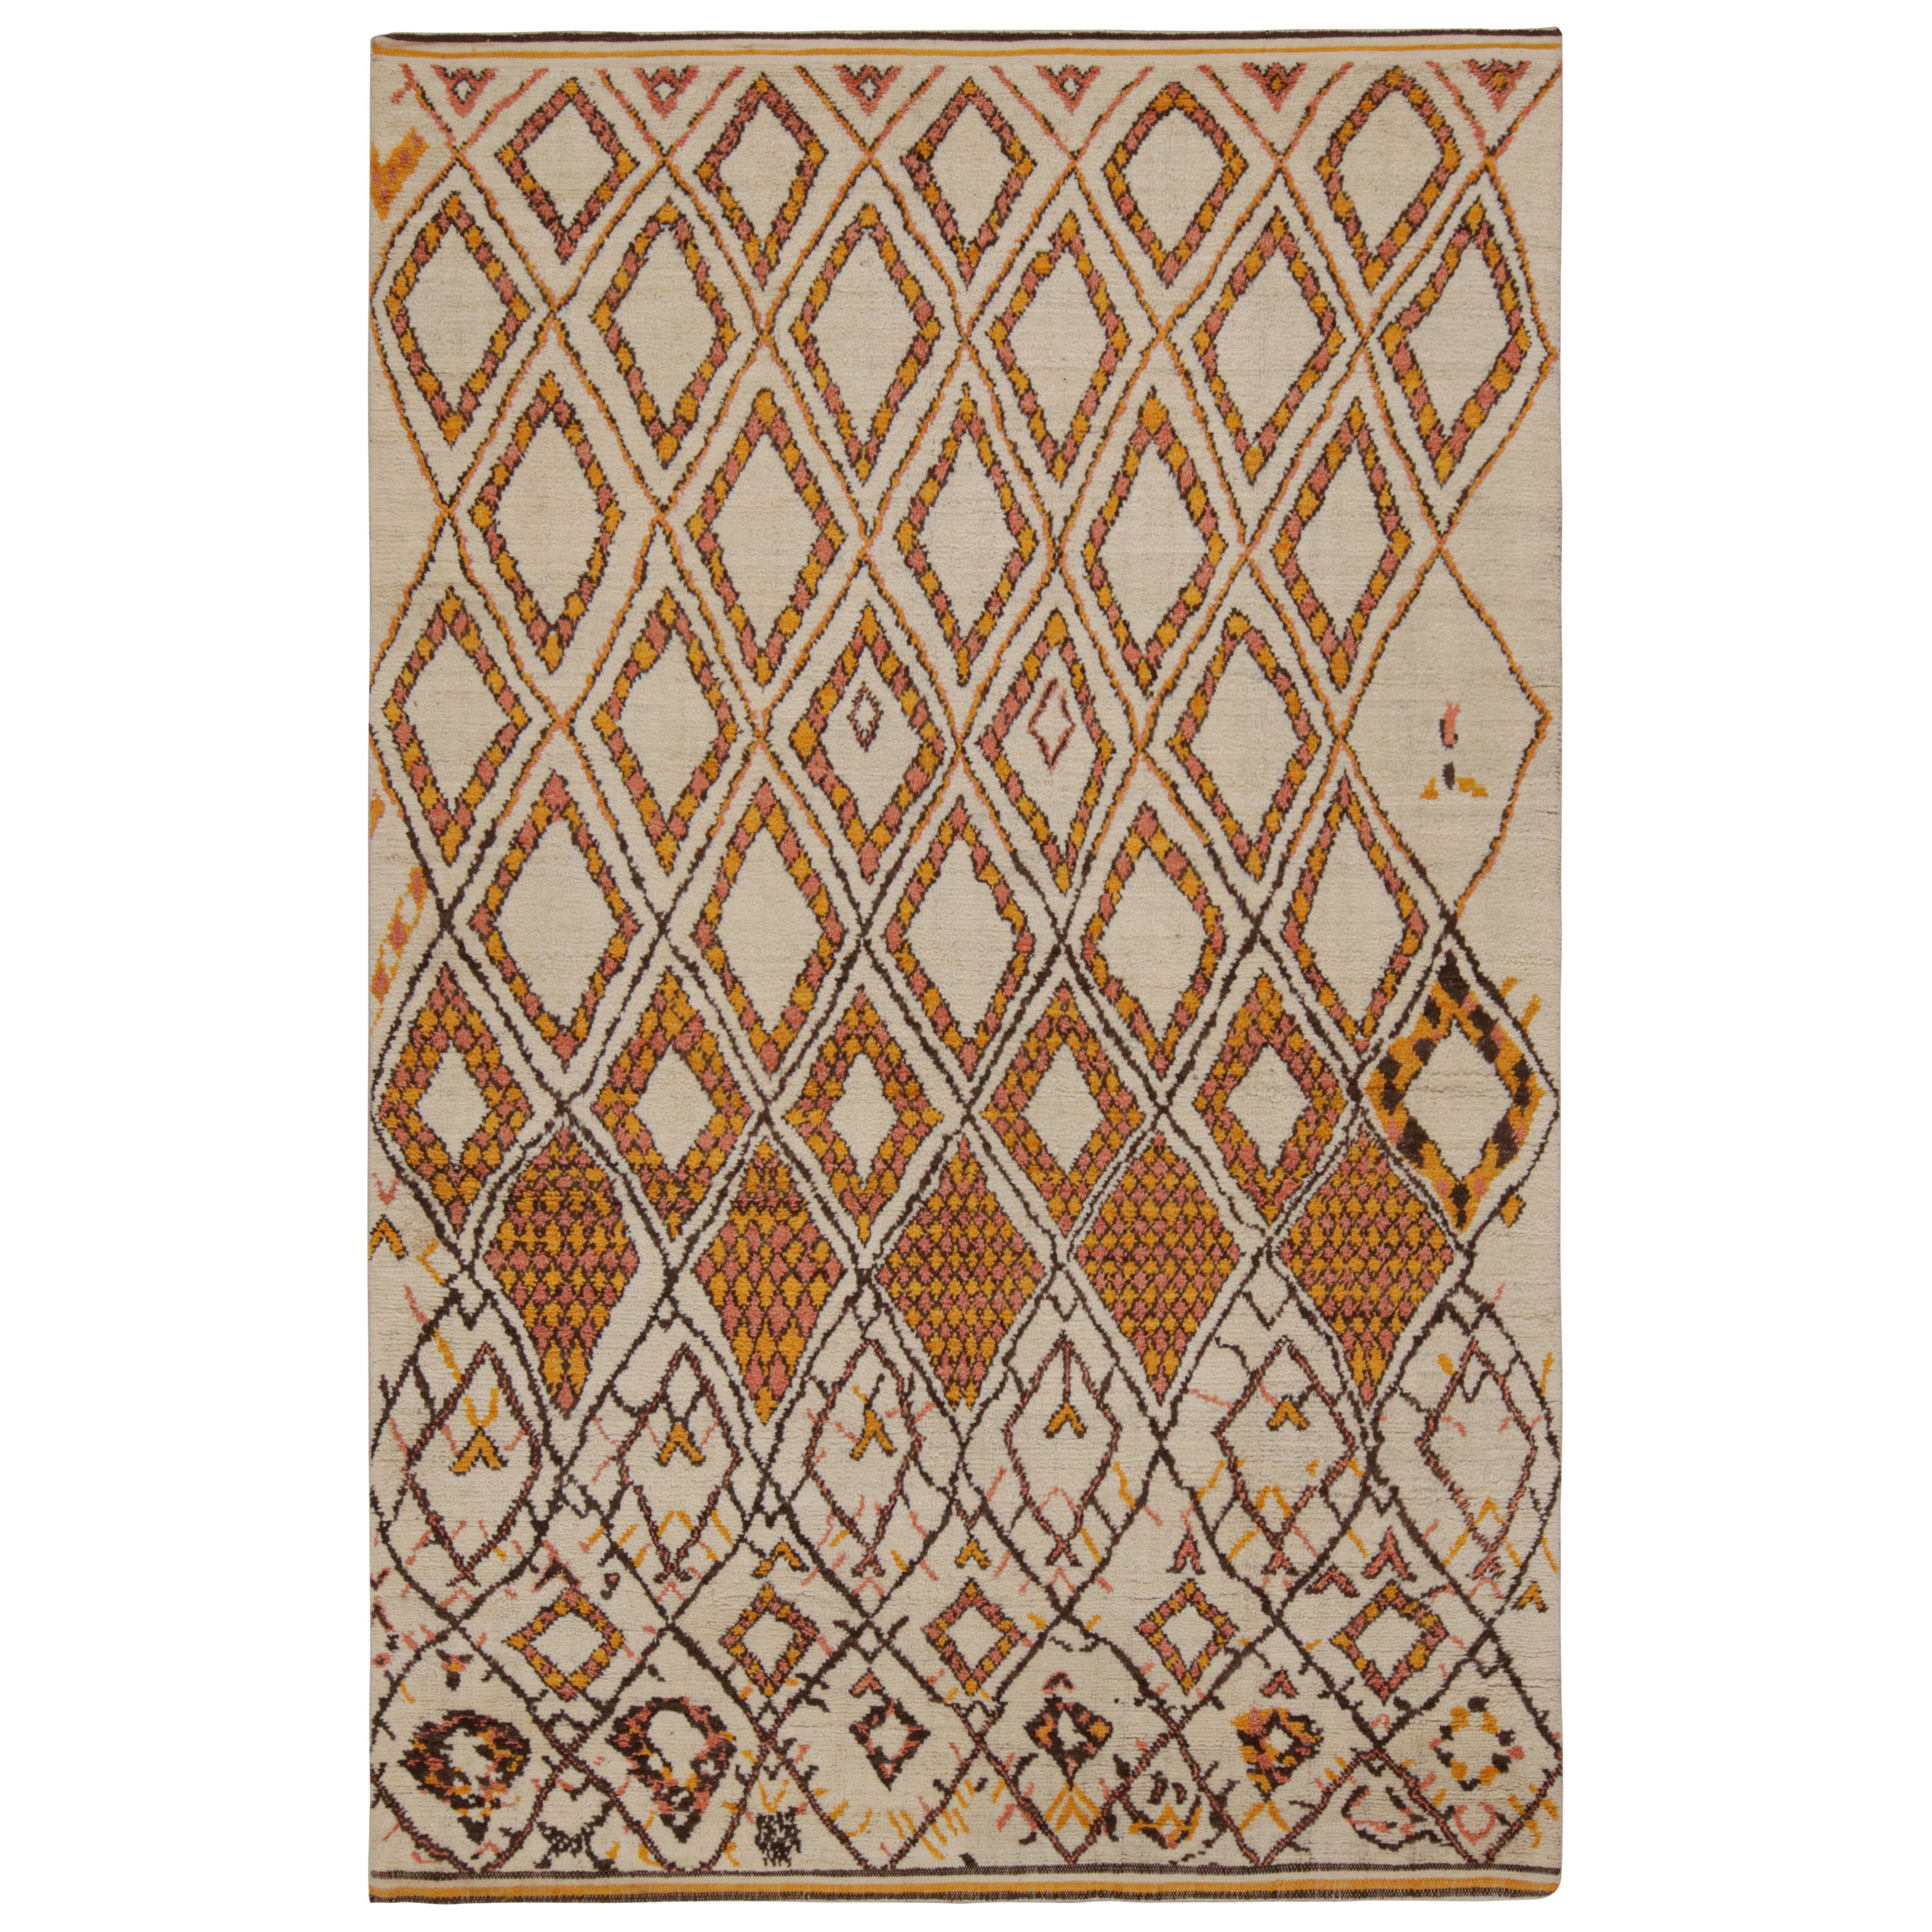 Rug & Kilim's Moroccan Style Rug in Beige-Brown & Orange Geometric Patterns (tapis de style marocain à motifs géométriques beige, marron et orange) en vente